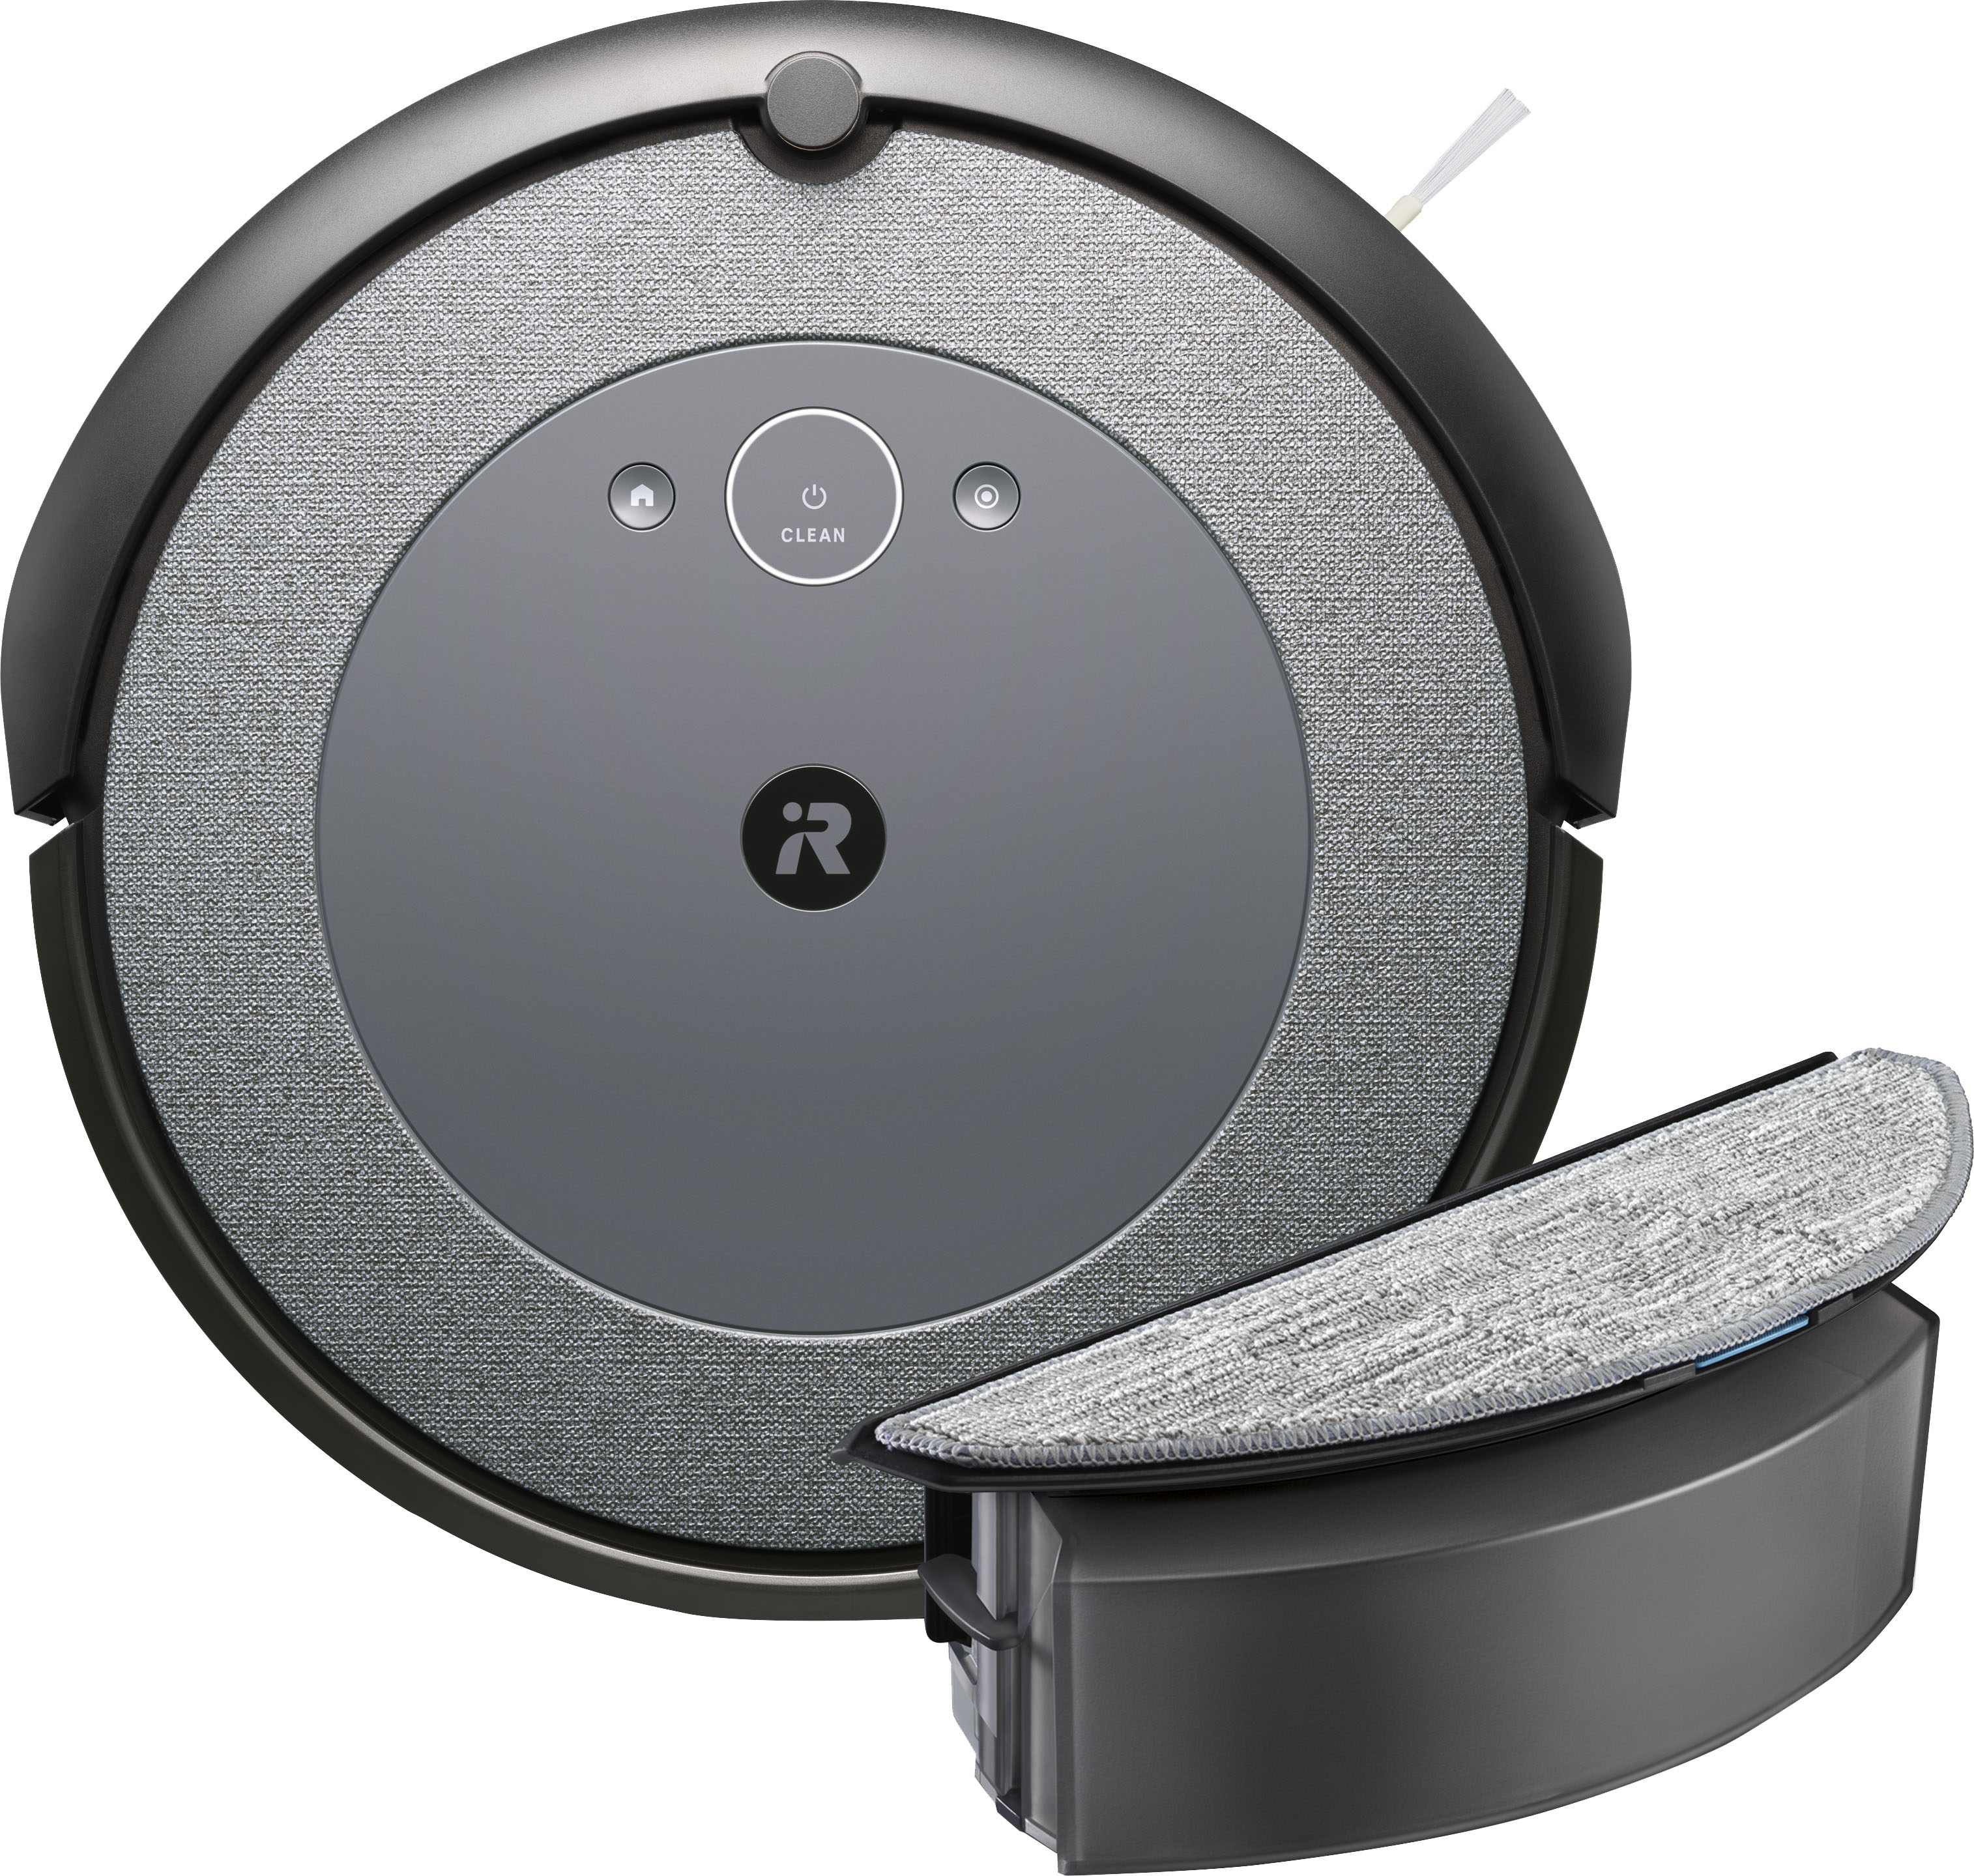 iRobot Roomba i5+ Robot Aspirador + Estación de Vaciado Automático Clean  Base